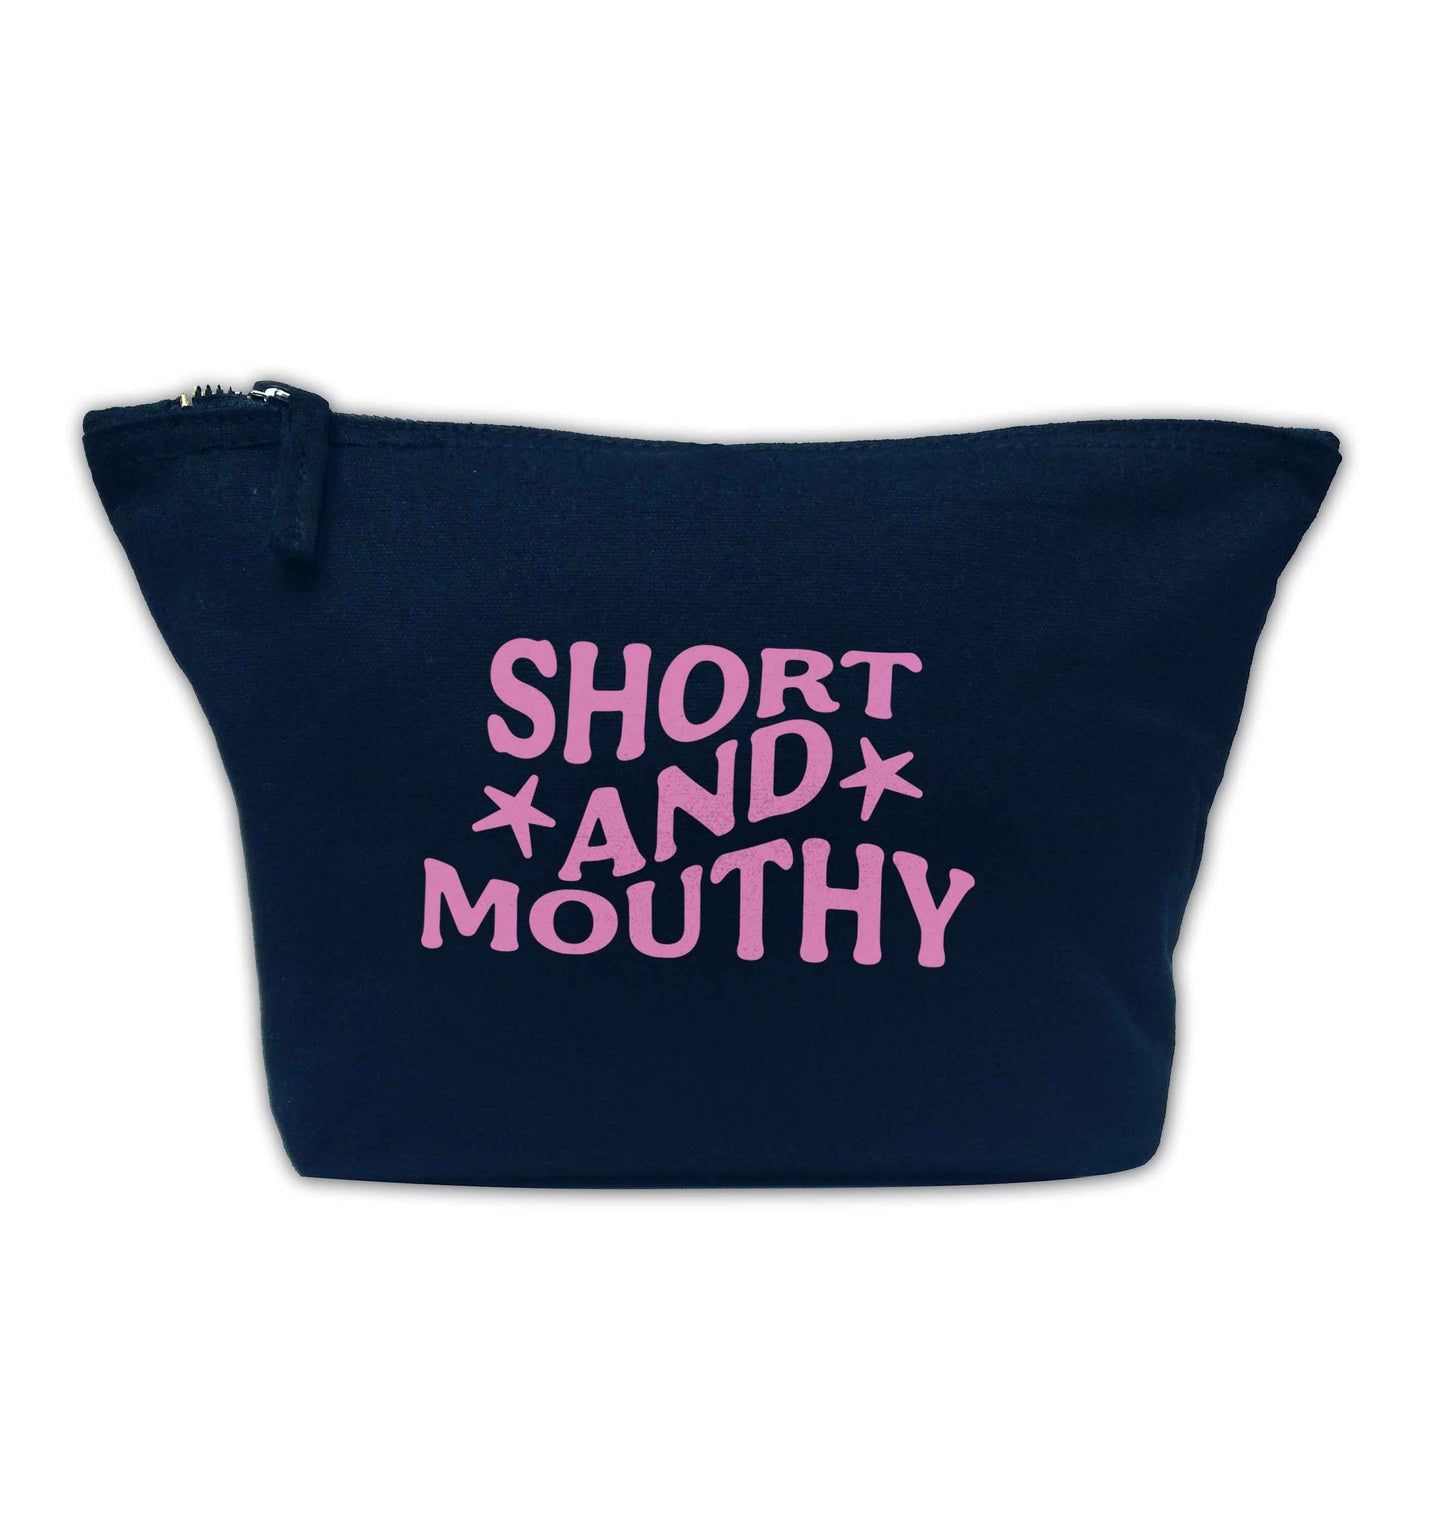 Short and mouthy navy makeup bag